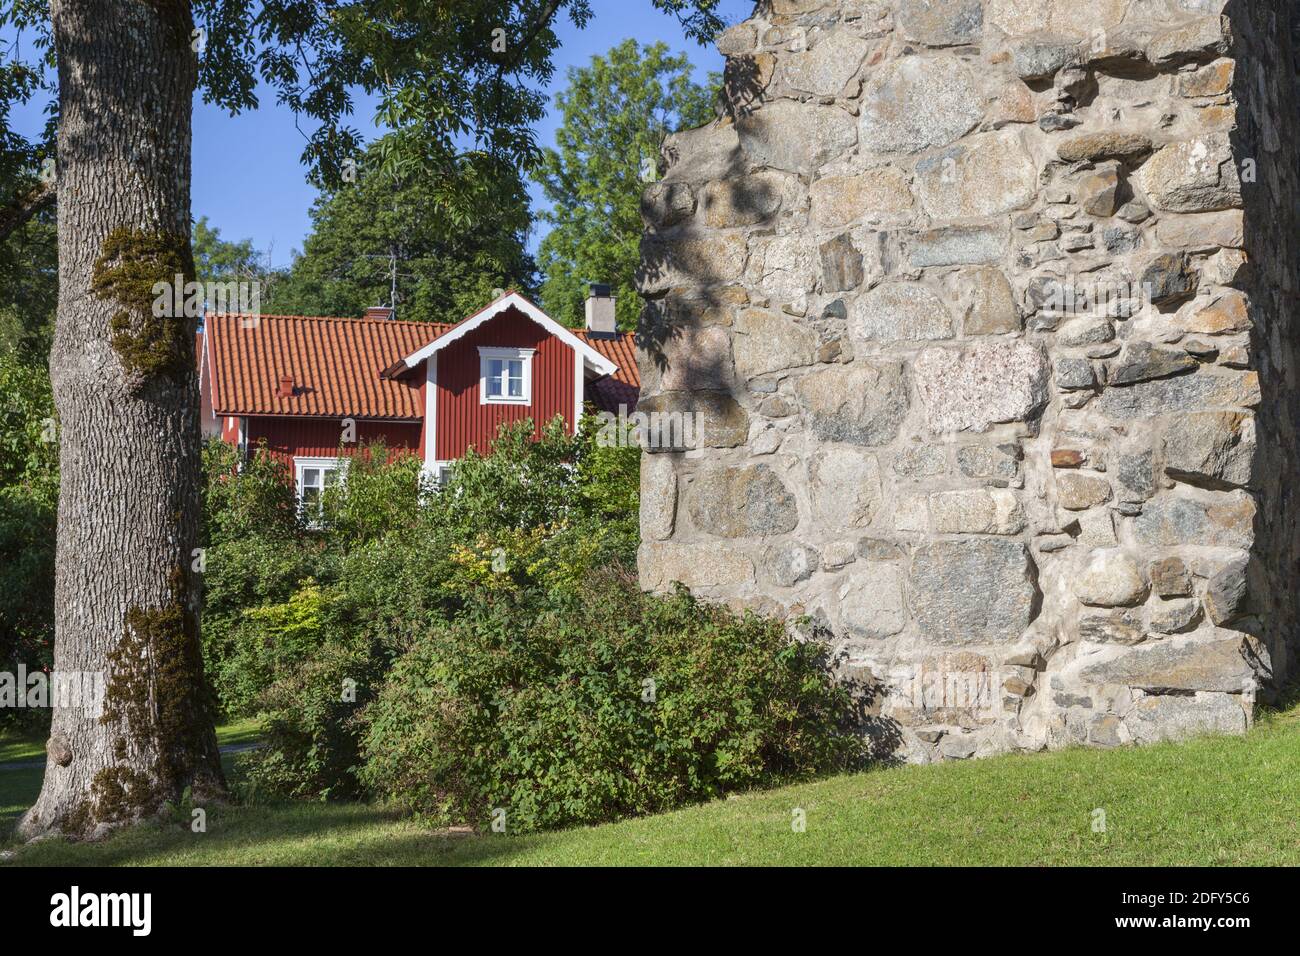 Géographie / Voyage, Suède, Stockholm laen, Sigtuna, ruine d'une église Saint-Olof à Sigtuna, Uppland, droits-supplémentaires-autorisation-Info-non-disponible Banque D'Images